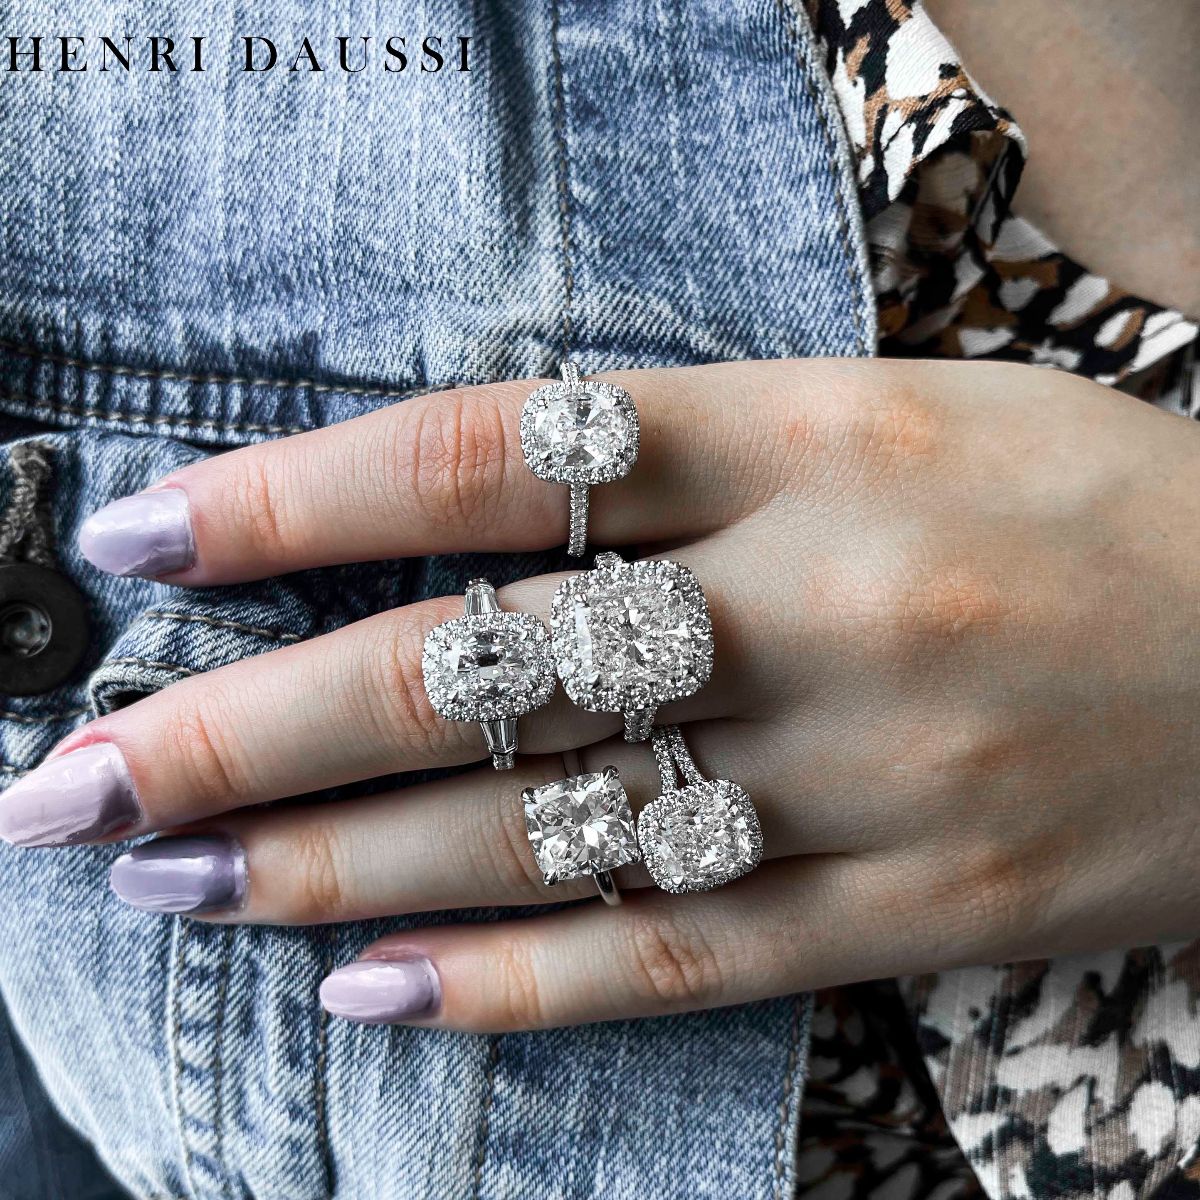 Henri Daussi Platinum GIA Certified 2.78ct tw Pear Shape Diamond Halo Engagement Anniversary Ring - HANIKEN JEWELERS NEW-YORK